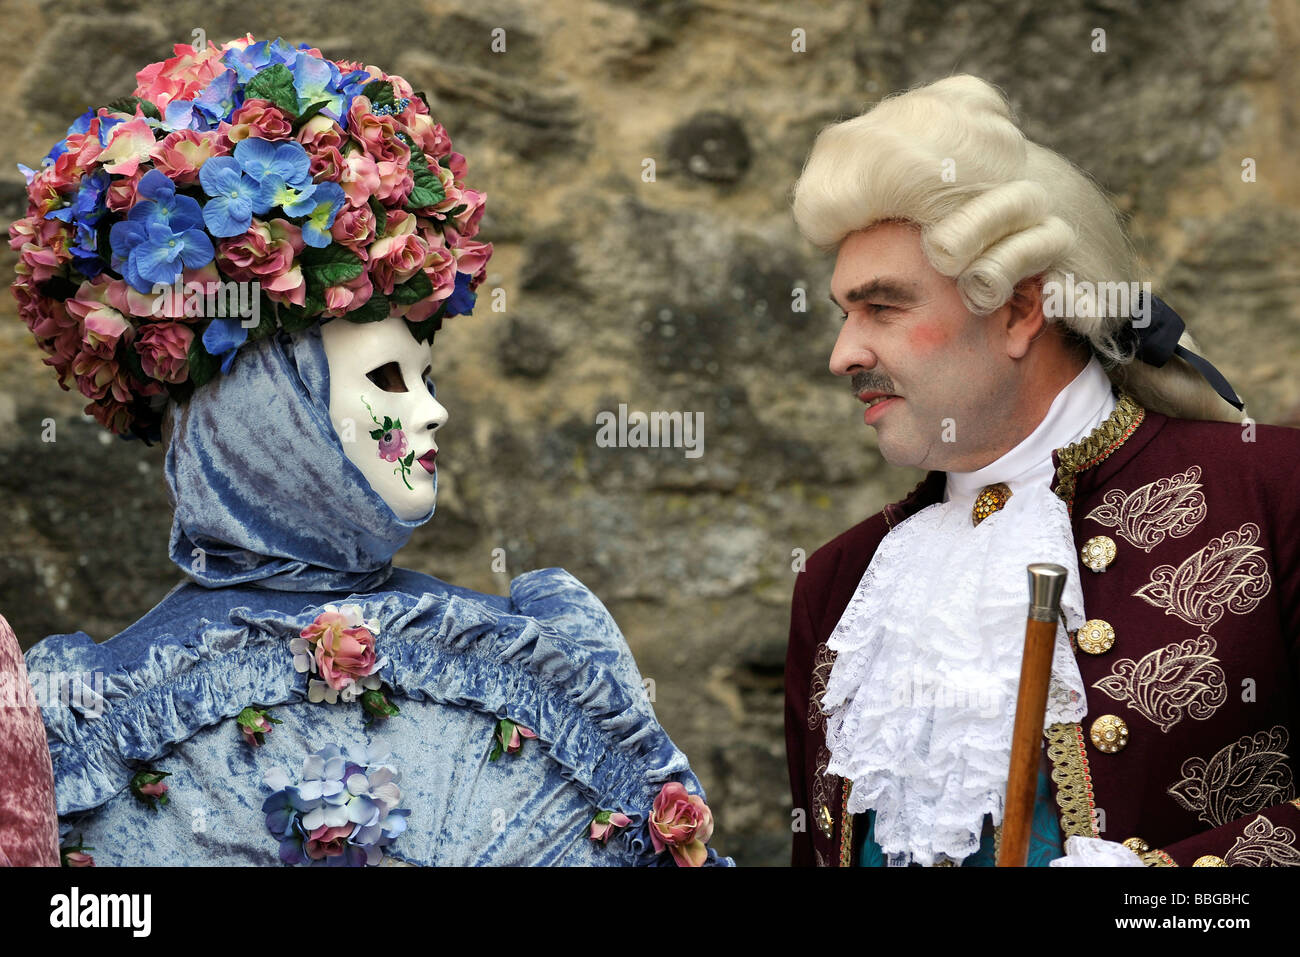 Leben im Barock des 18. Jahrhunderts, venezianische Maske, Menschen in  venezianischen Kleidung, Schiller Jahrhundertfest Jahrhundert festiv  Stockfotografie - Alamy